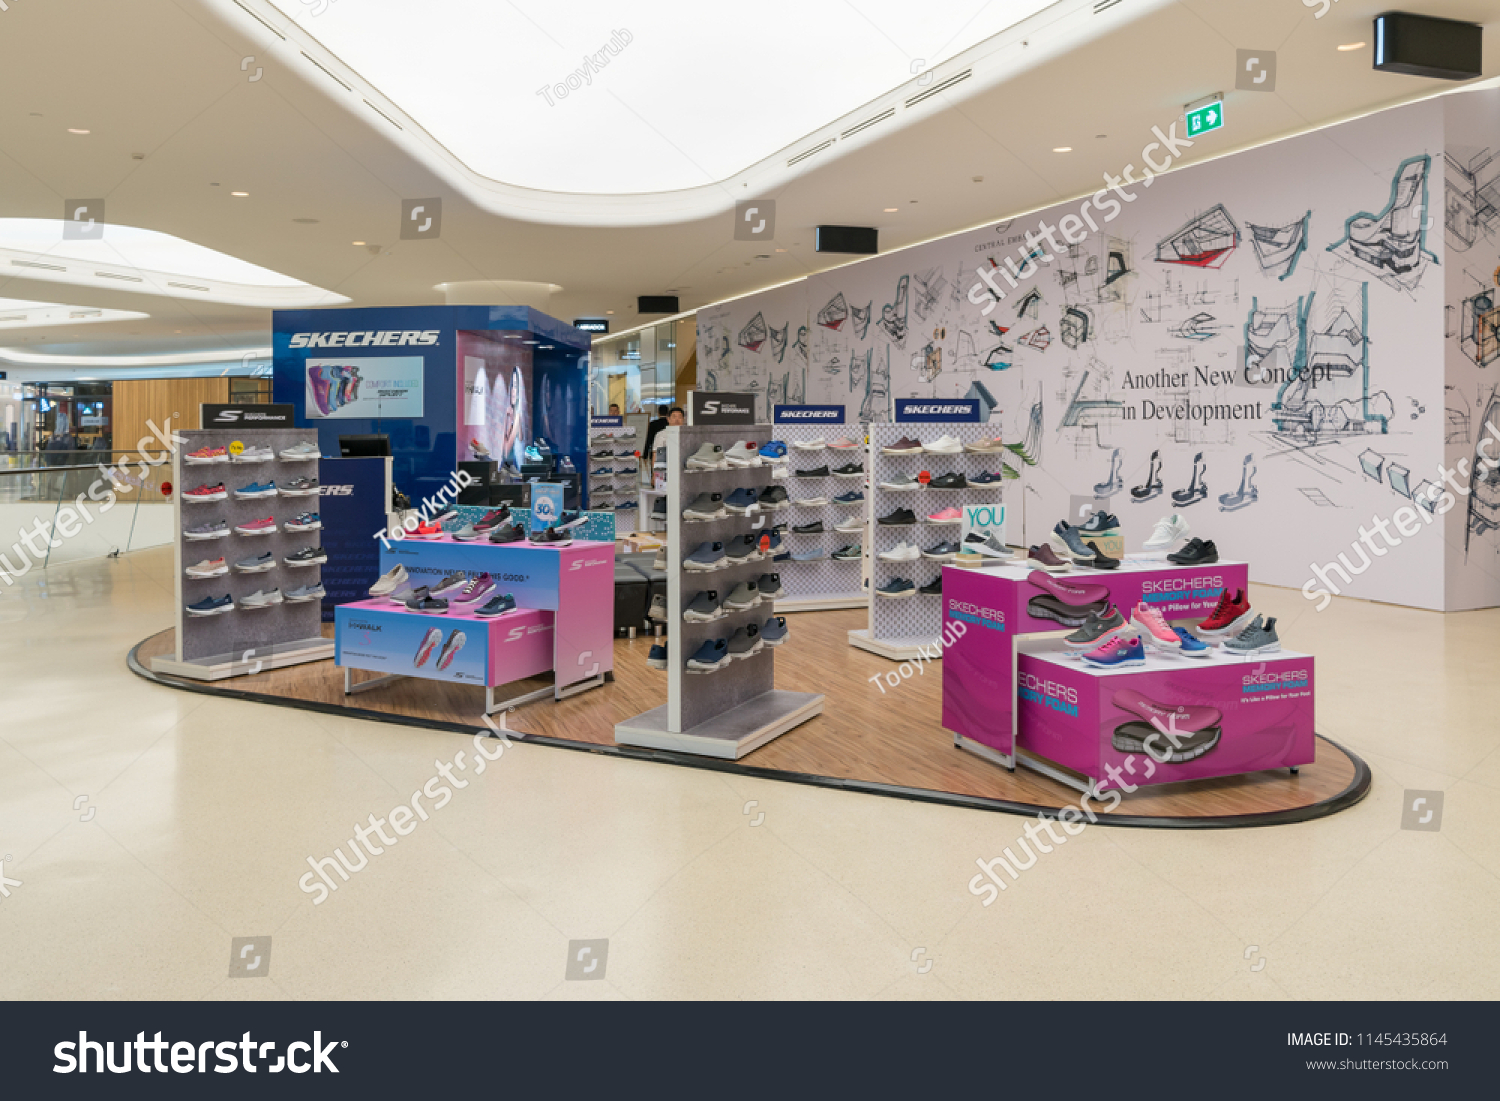 skechers shoes shop